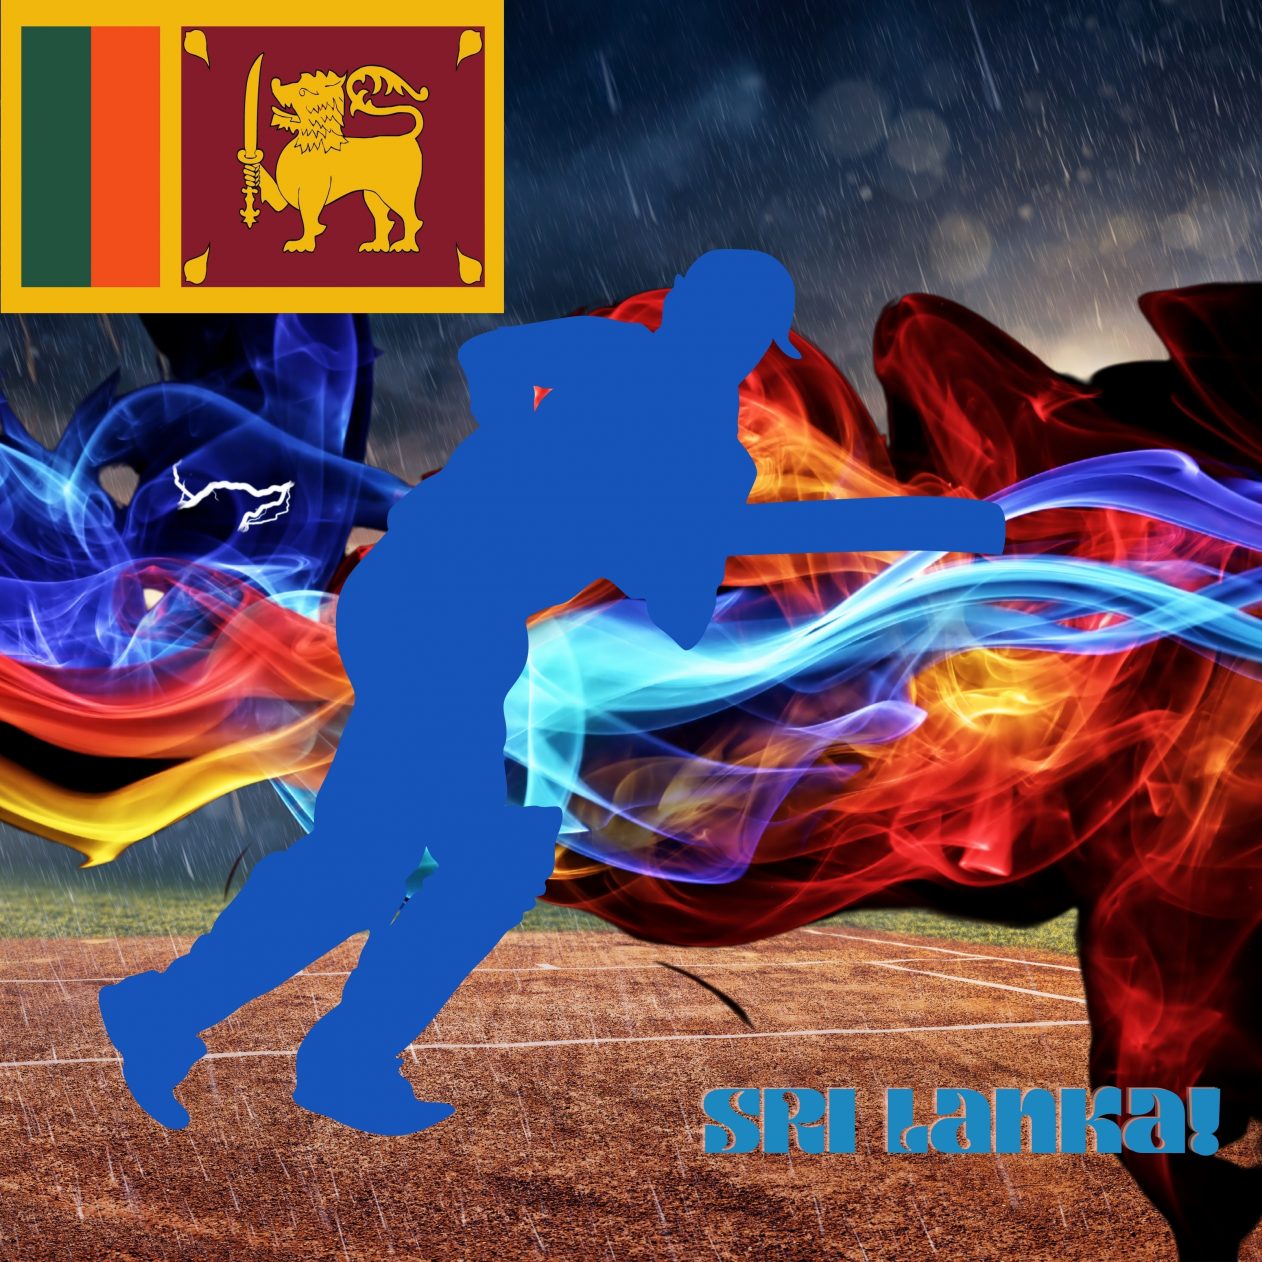 1262x1262 Parallax wallpaper 4k Sri Lanka Cricket Stadium iPad Wallpaper 1262x1262 pixels resolution